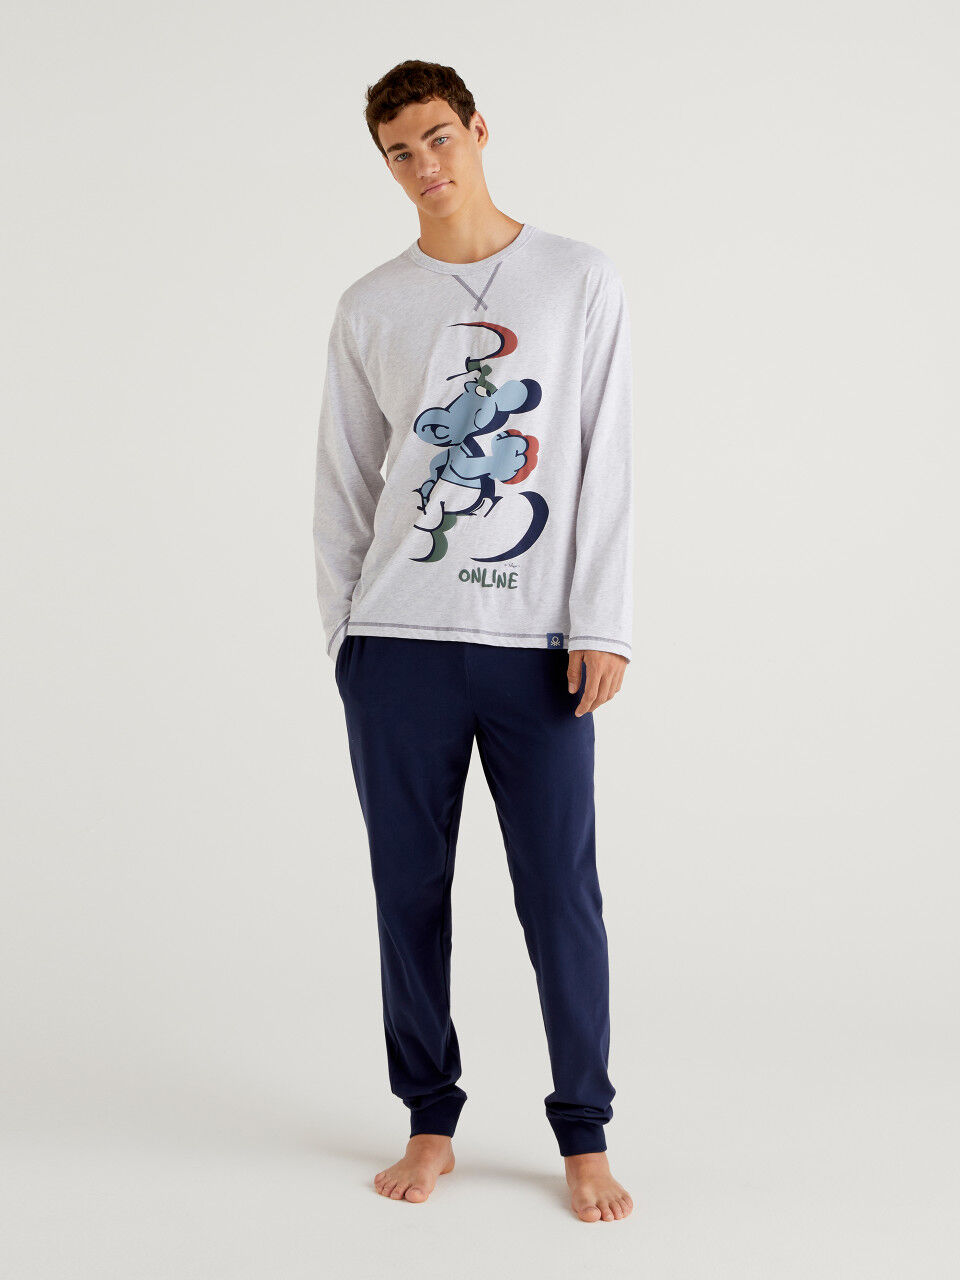 Mens Pyjamas Set Long Sleeve Nightwear Loungewear Pjs Lounge Wear T-shirt  Pants | eBay